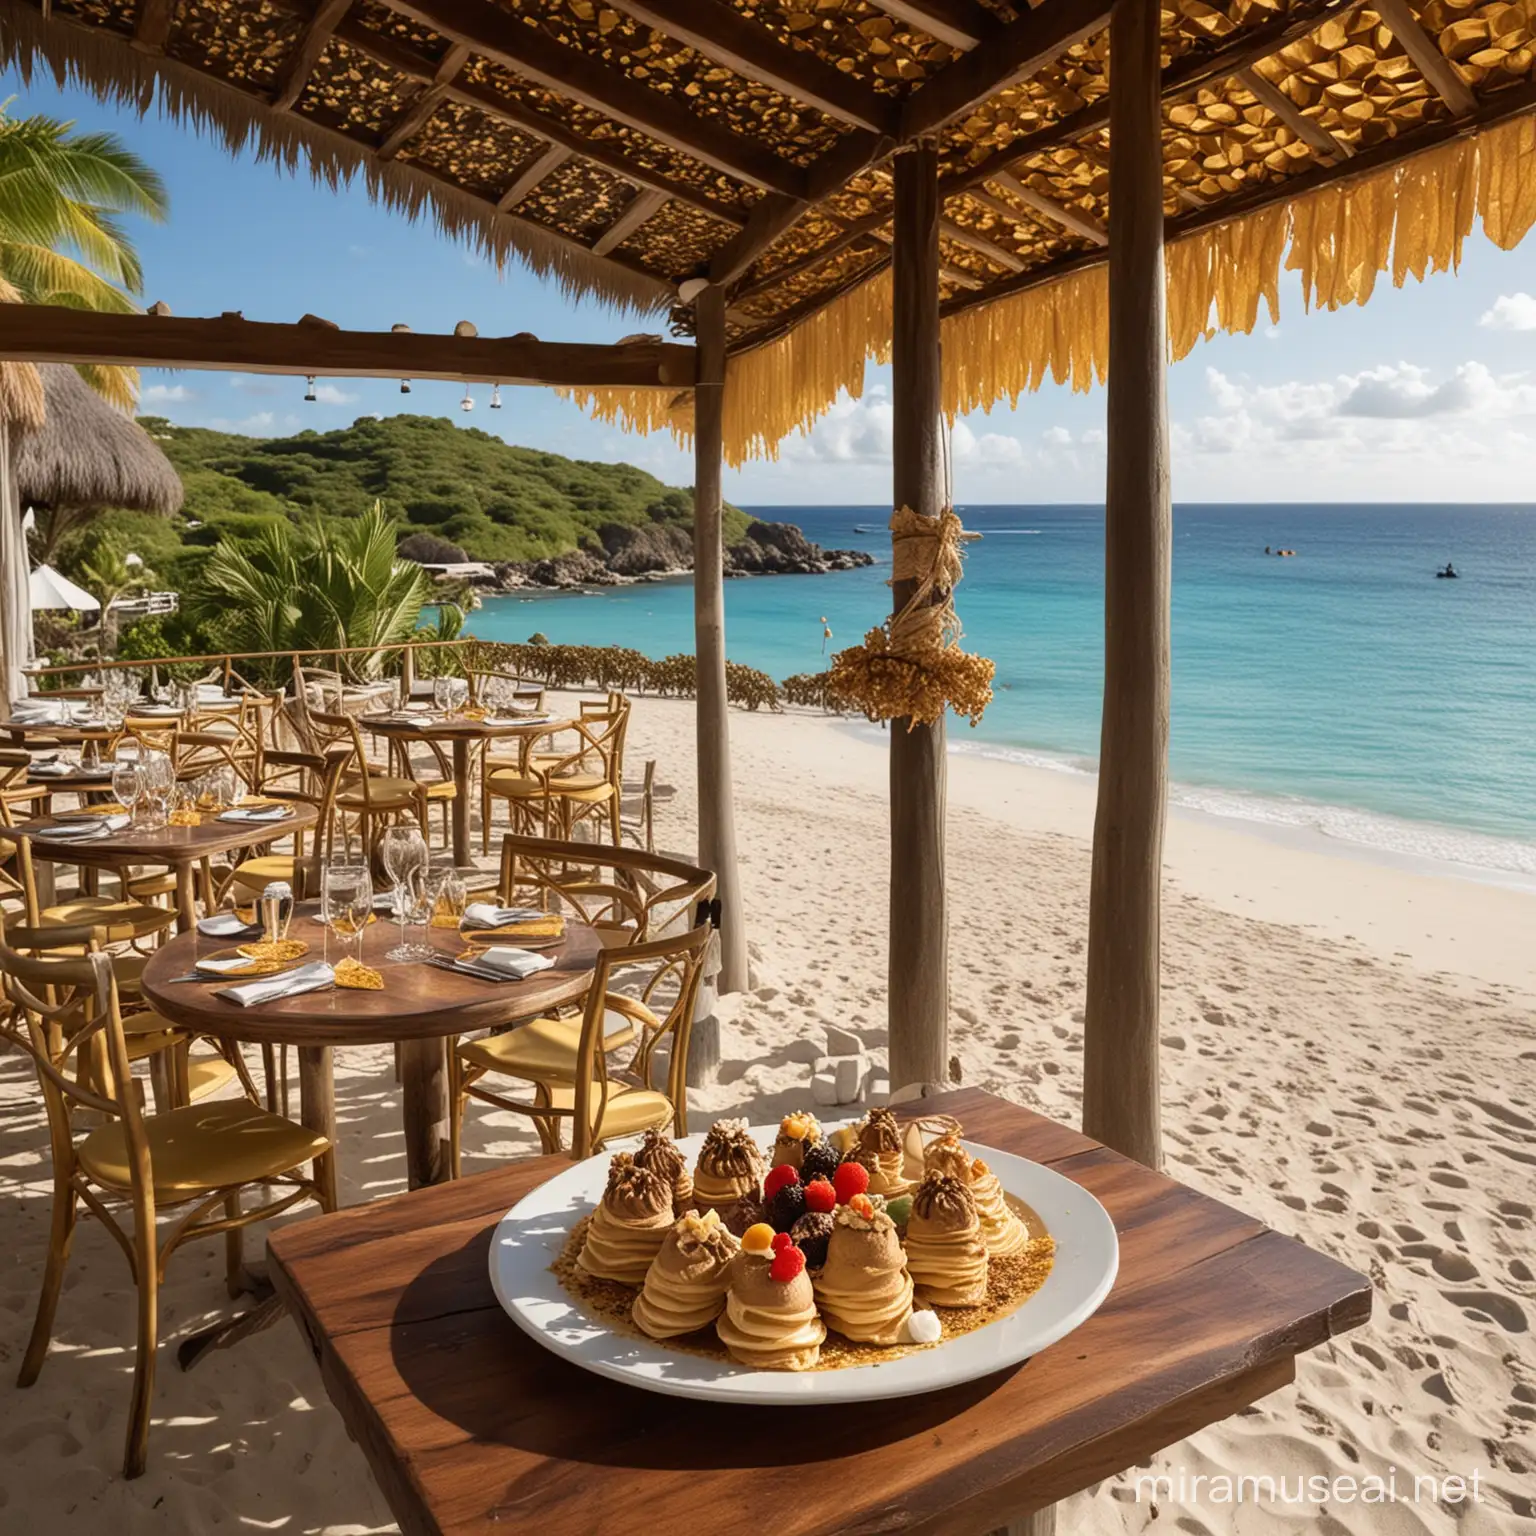 Créer un restaurant en bord de plage sur l'île de Saint Barthélemy.
C'est un restaurant intimiste.
Ce restaurant propose uniquement des crêpes de luxe (à la truffe, au caviar et au Nutella à la feuille d'or).